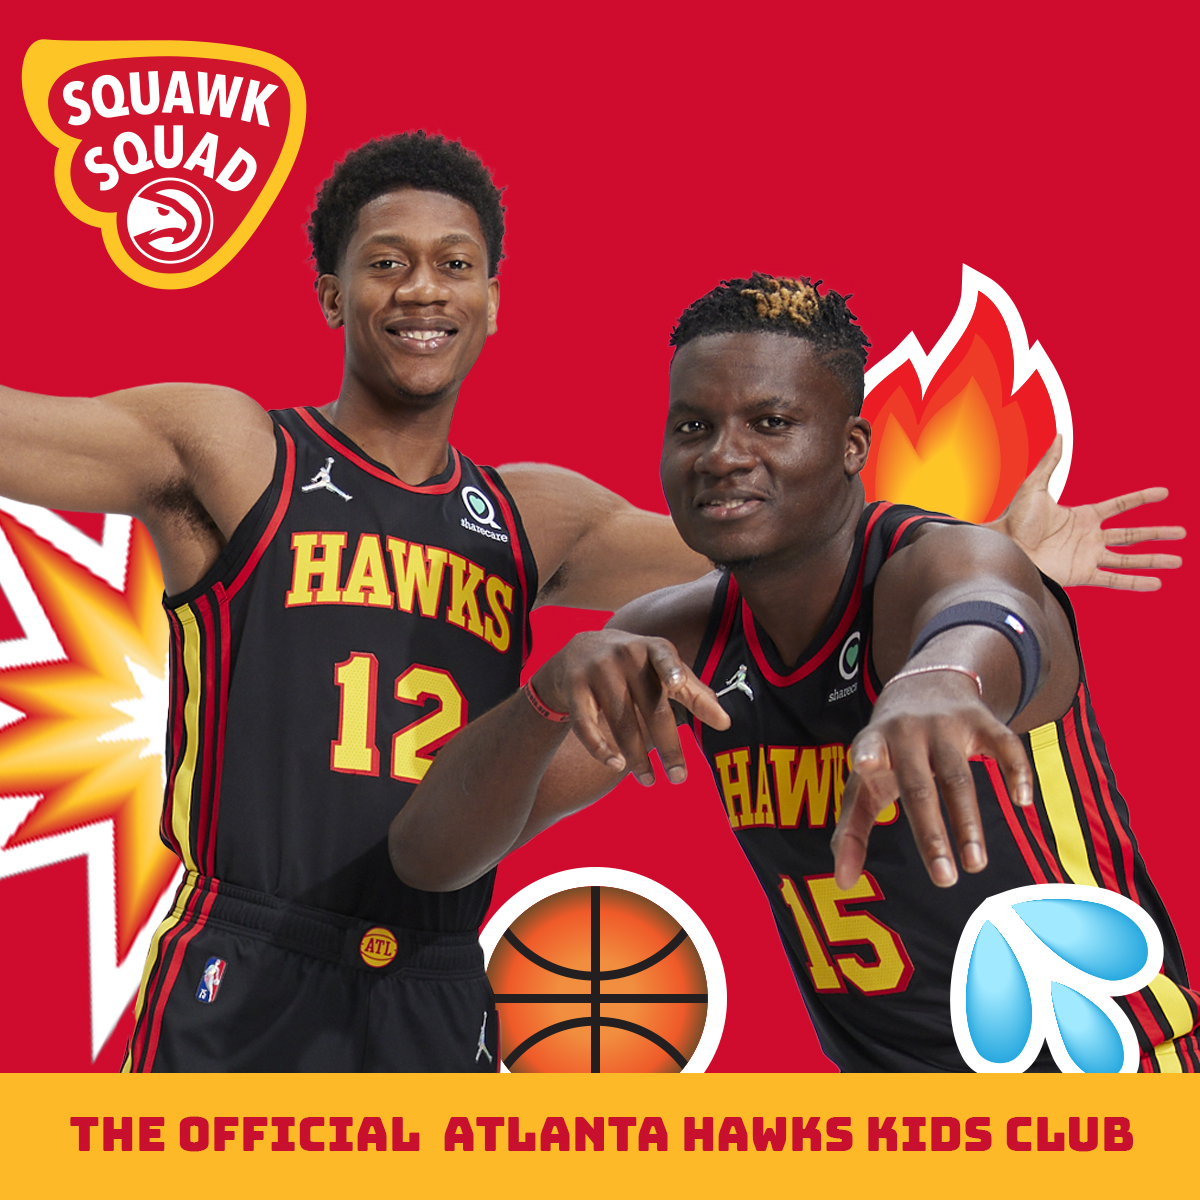 Atlanta Hawks Apparel, Atlanta Hawks Jerseys, Atlanta Hawks Gear